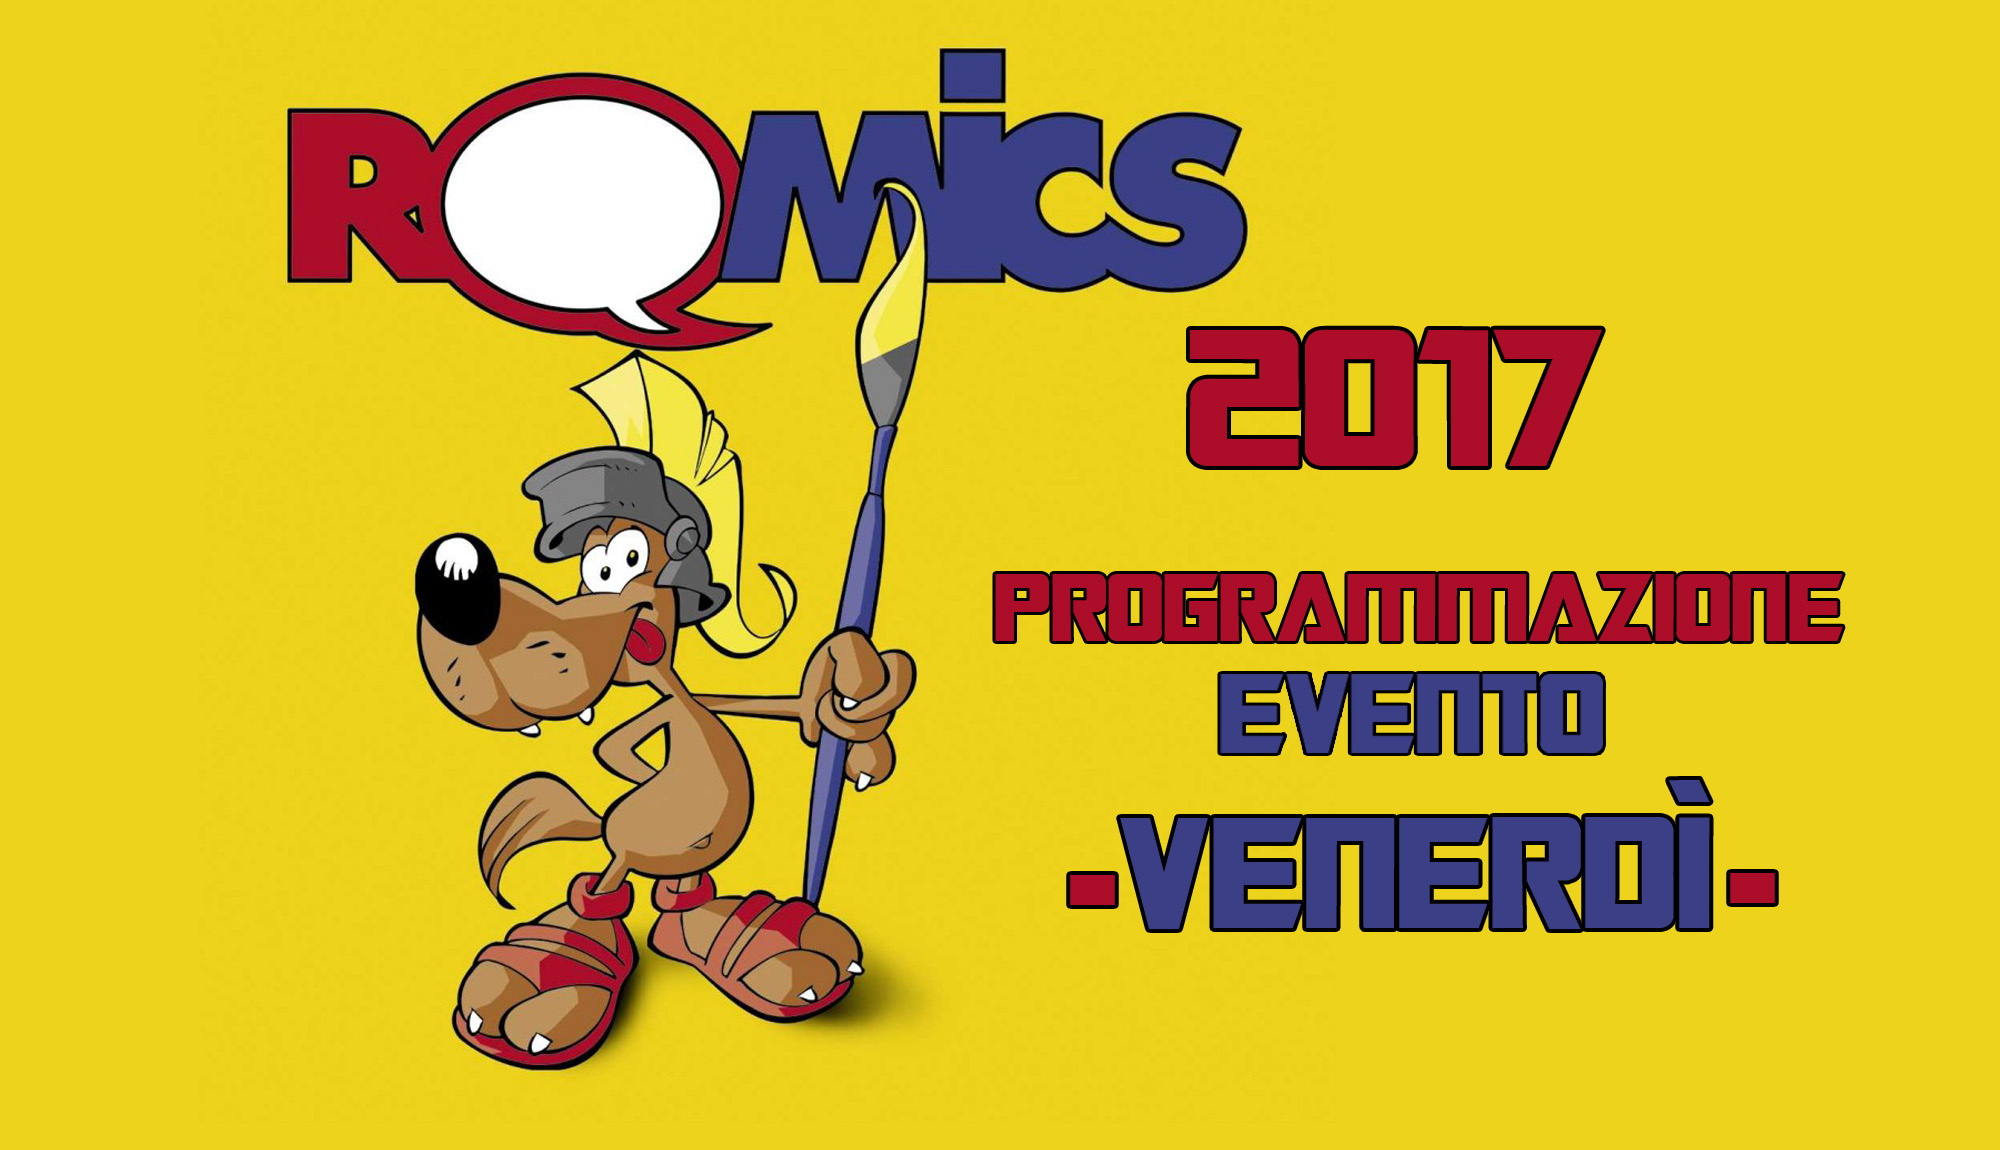 Romics 2017, programmazione evento per Venerdì 7 Aprile